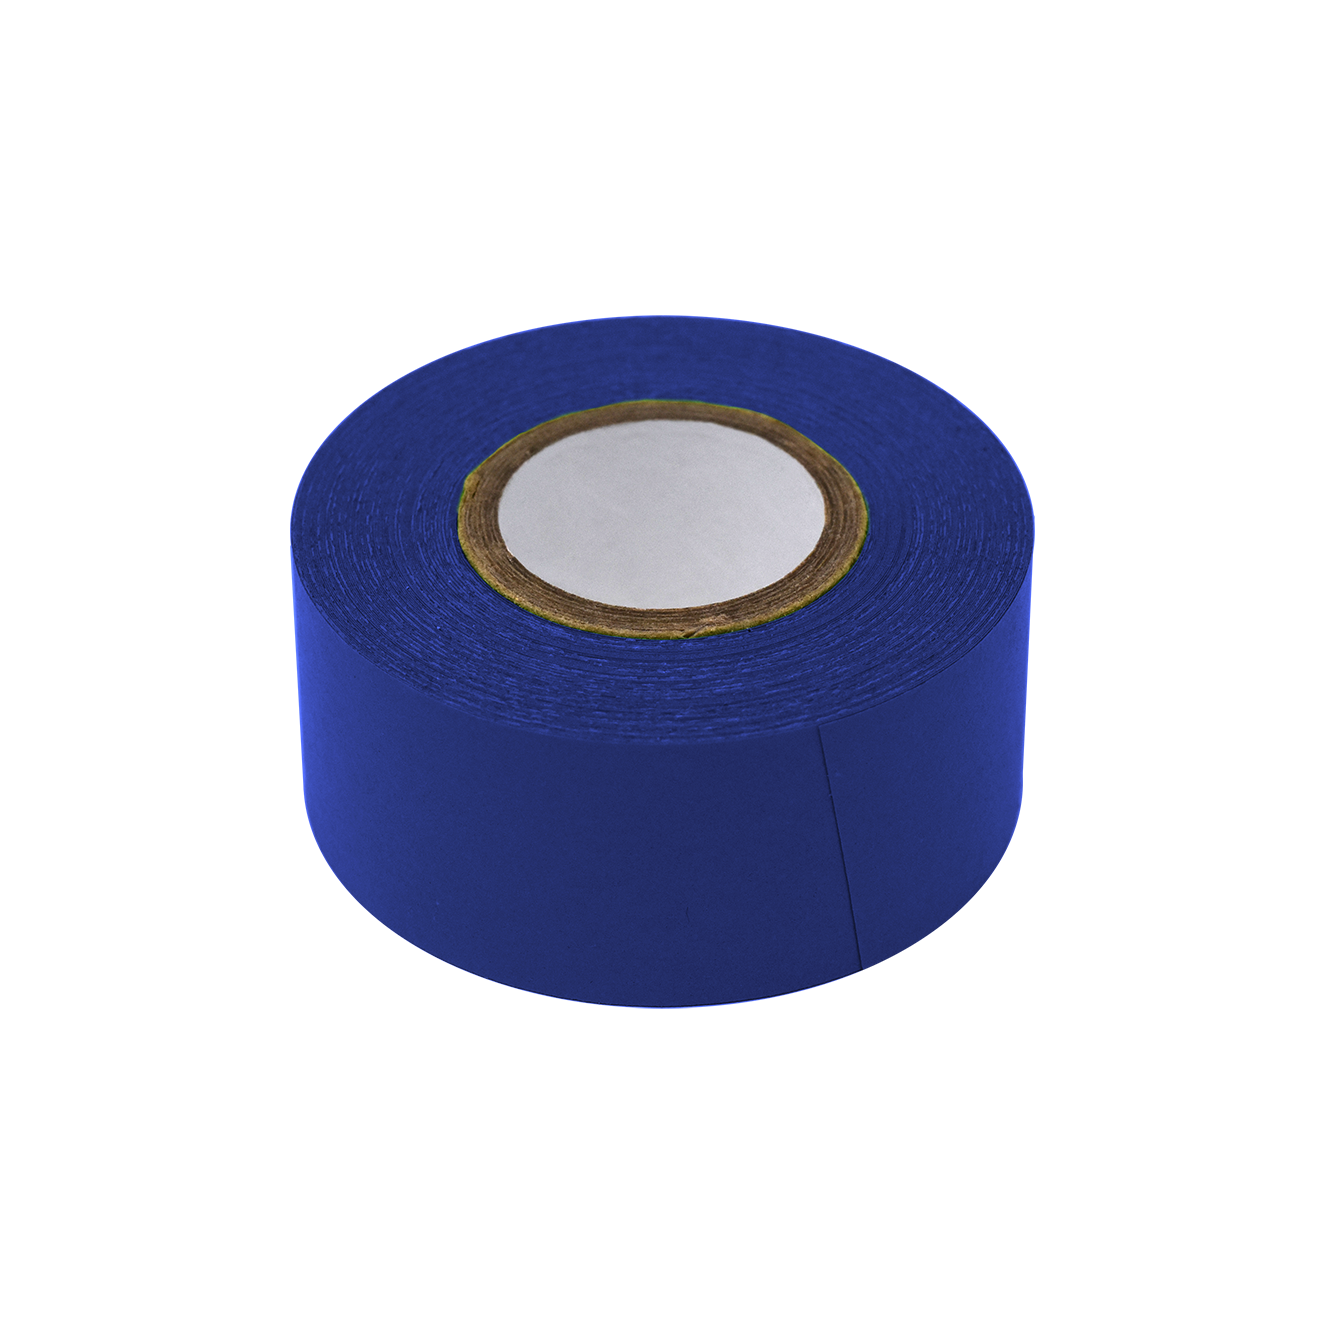 Globe Scientific Labeling Tape, 1" x 500" per Roll, 3 Rolls/Box, Dark Blue  